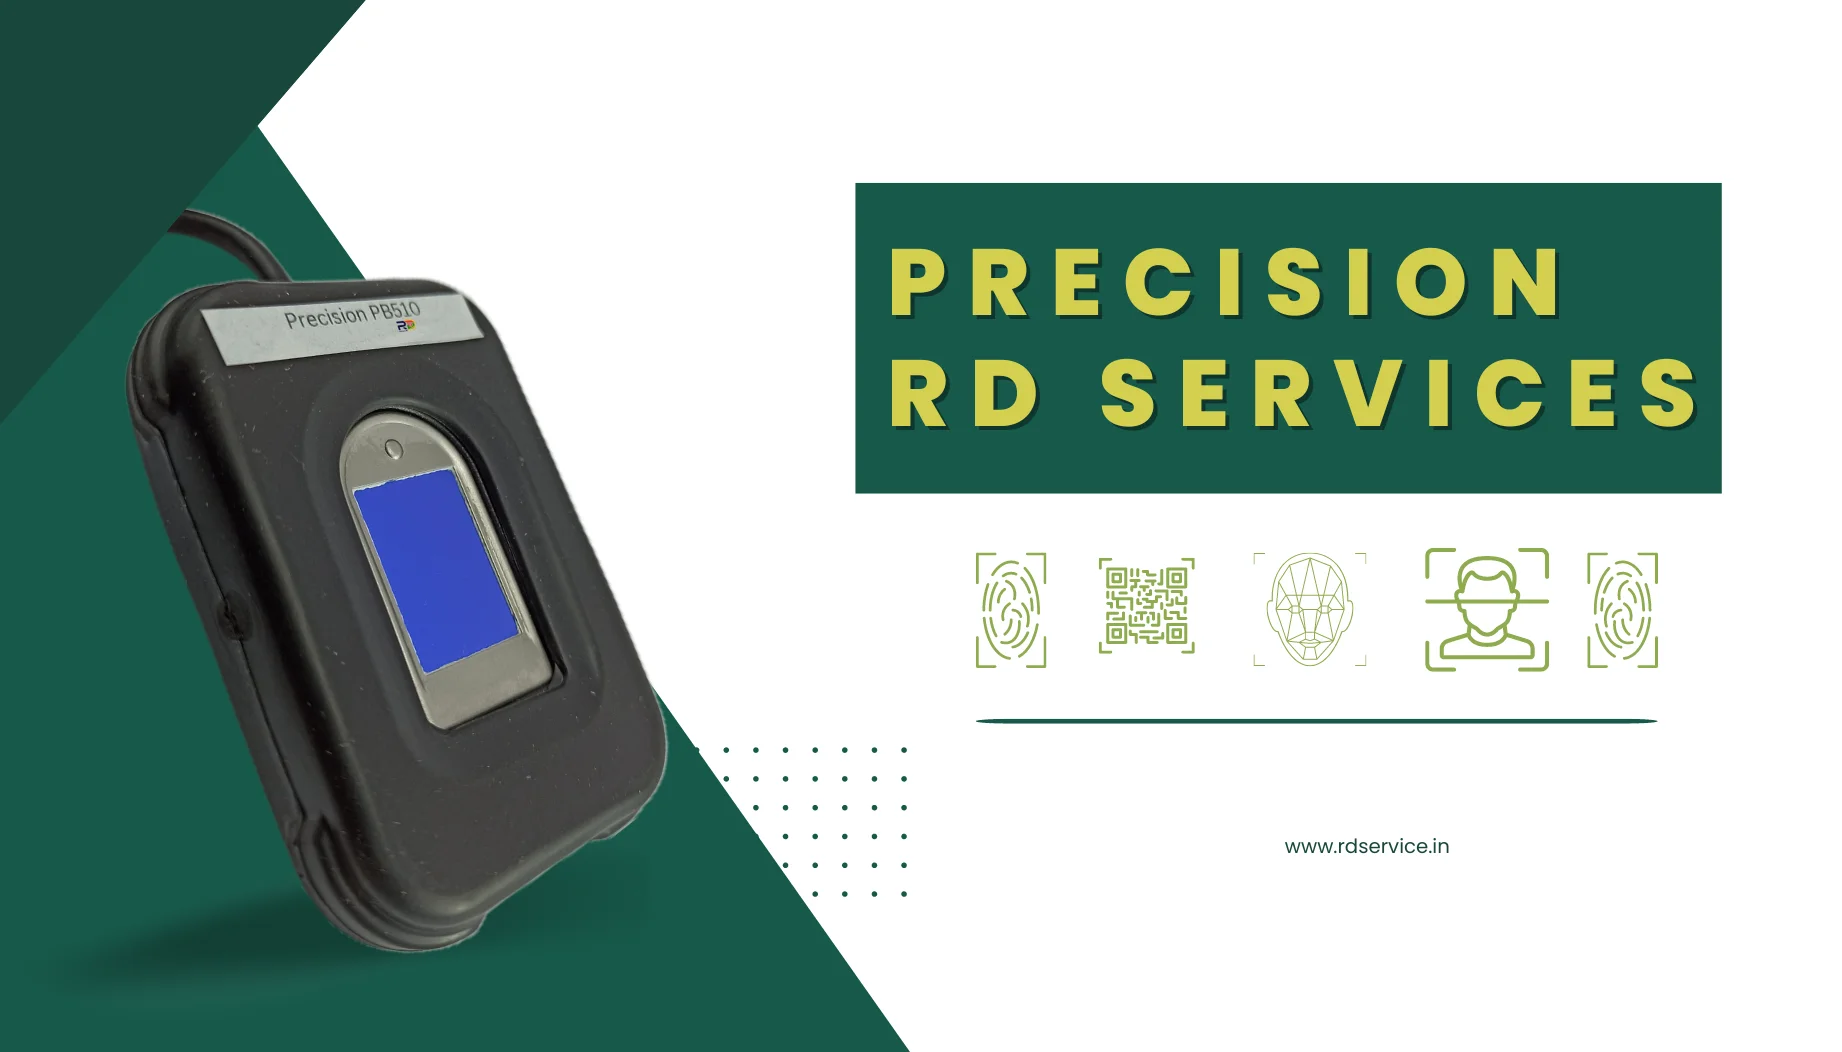 precision pb510 rd service